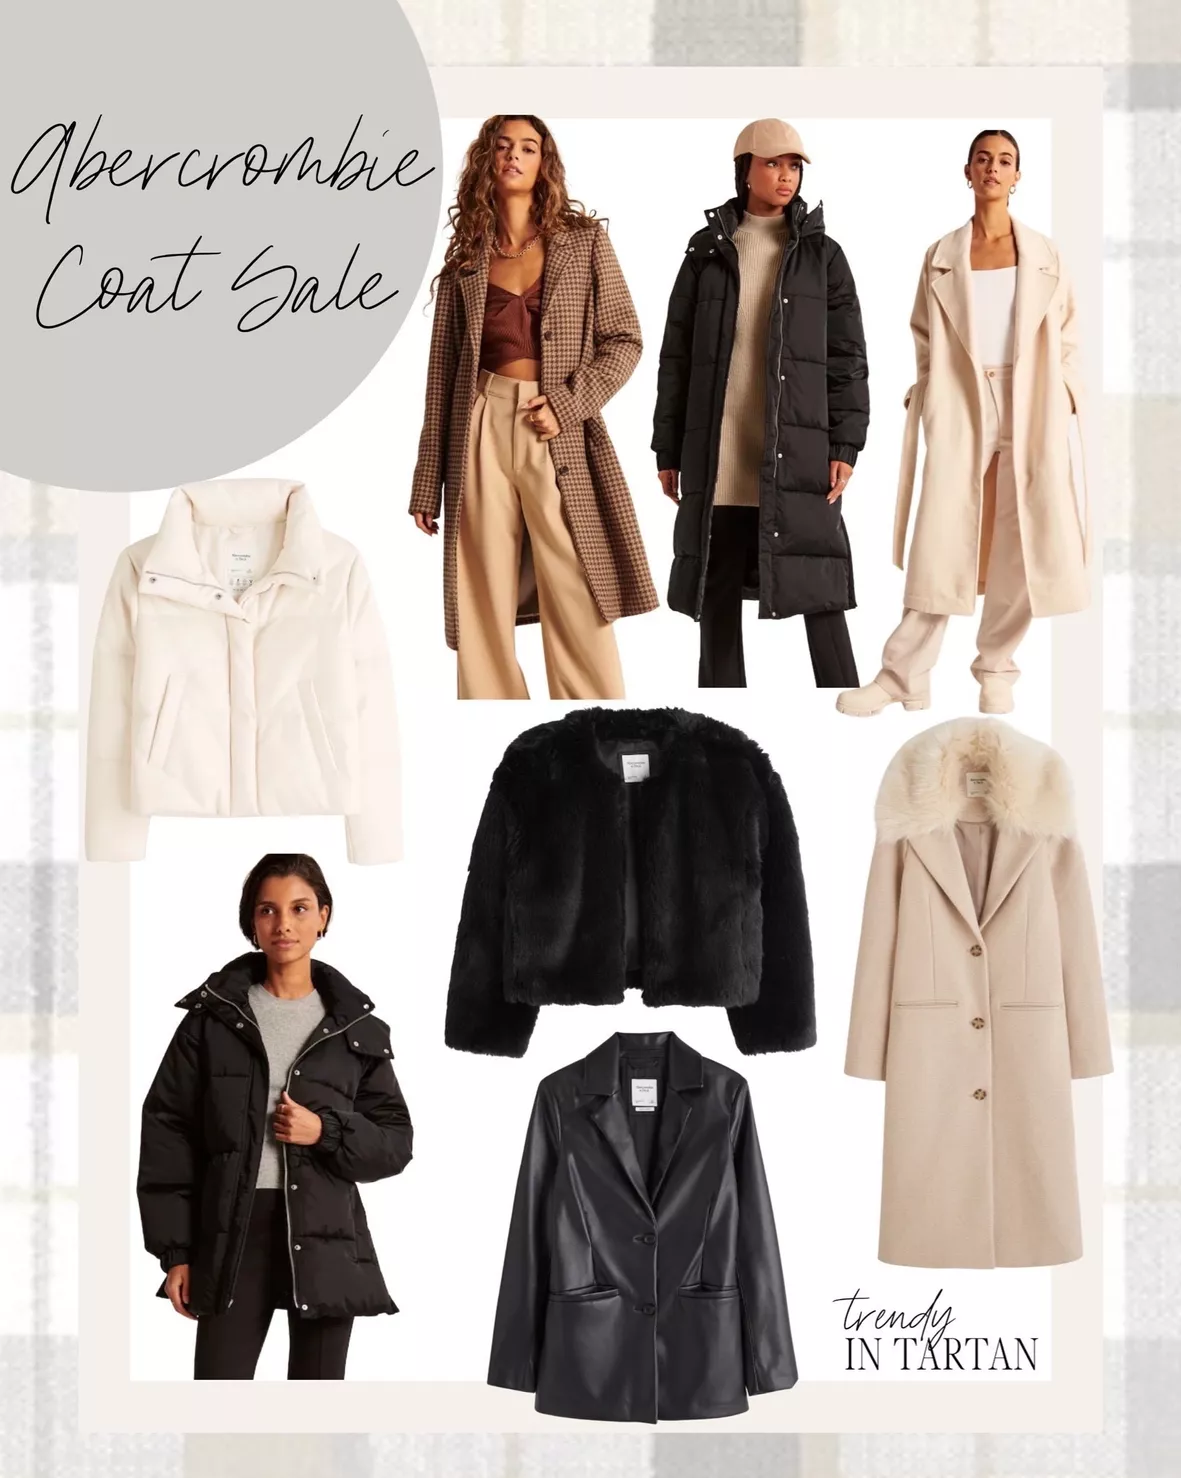 Women's Cropped Faux Fur Jacket, Women's Clearance